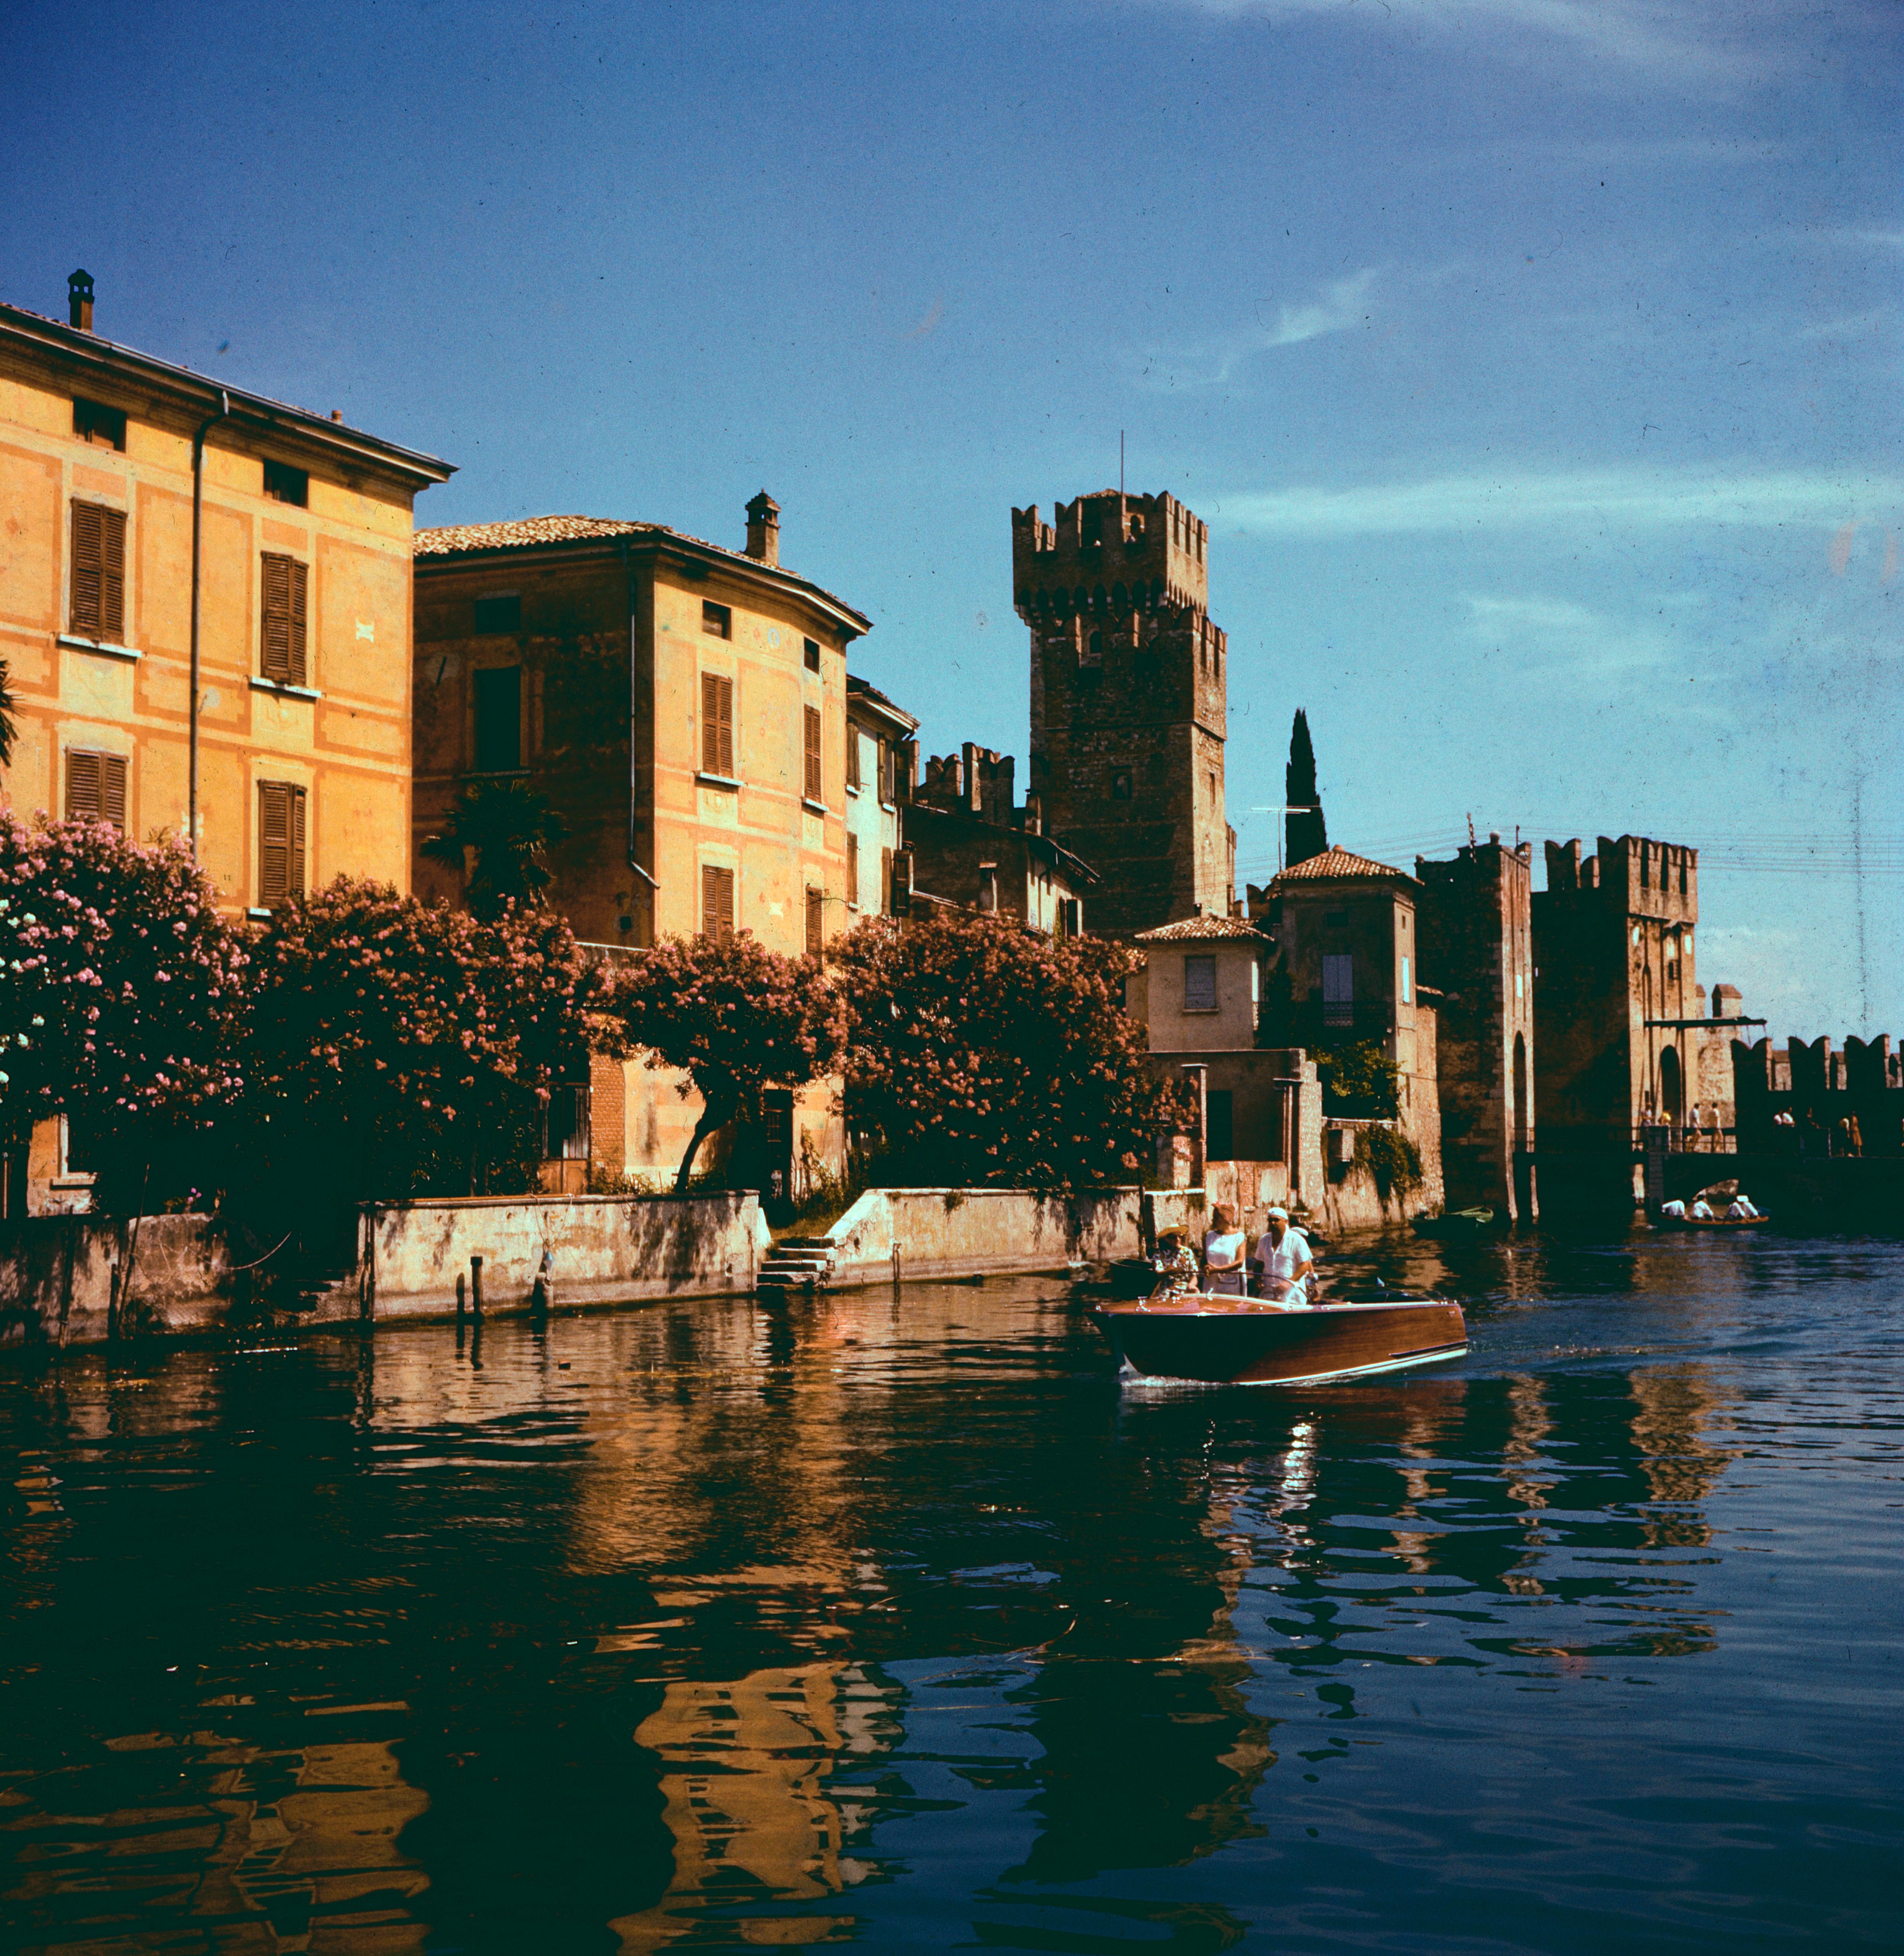 Unknown Color Photograph - Italy in  1956 - Sirmione Lago di Garda Castello Scaligero - Italy